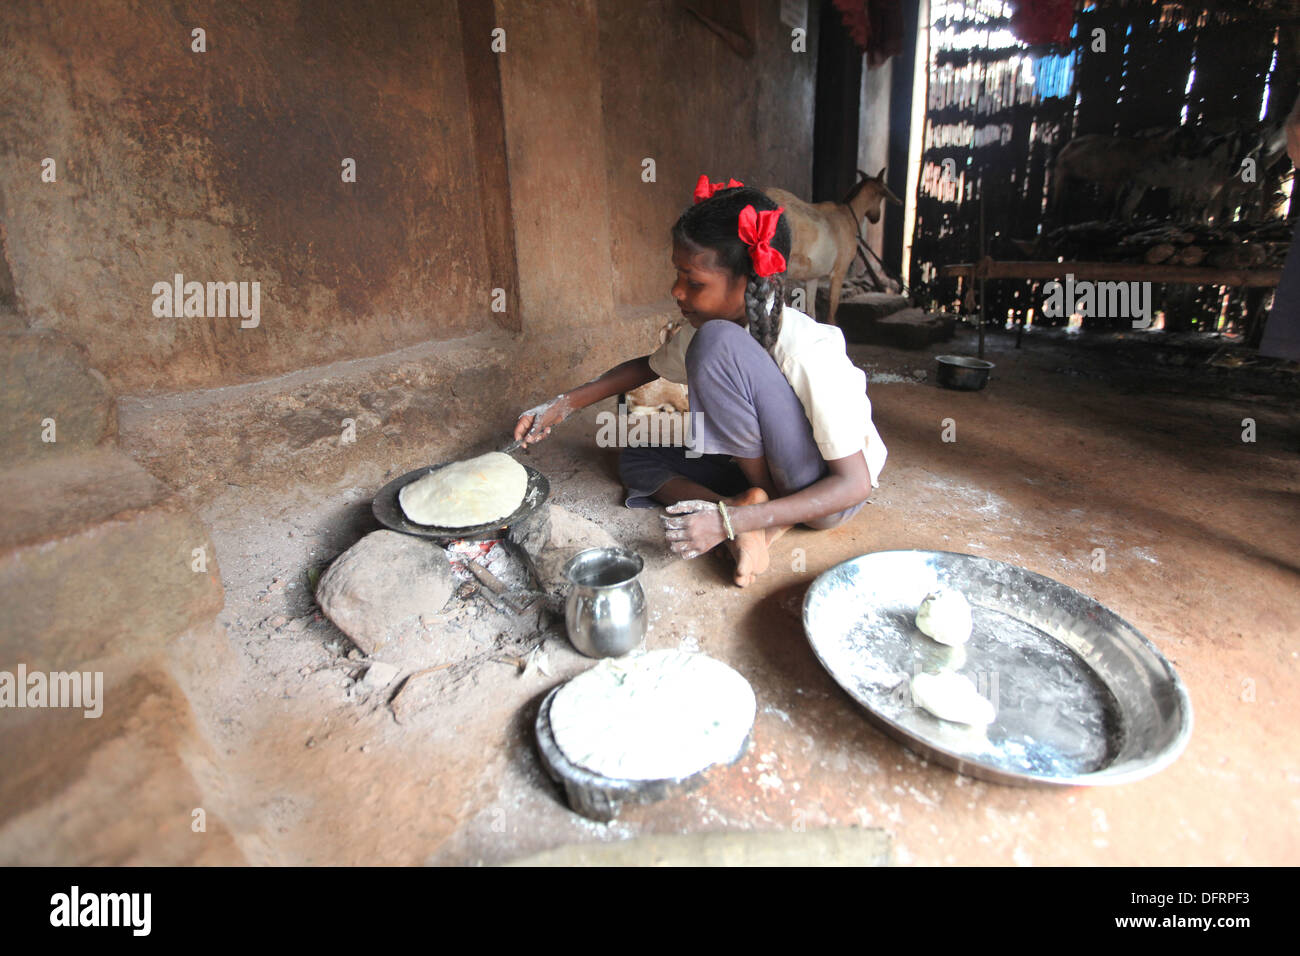 Katkari tribal girl making chapati, Karambali village, Maharashtra, India Stock Photo